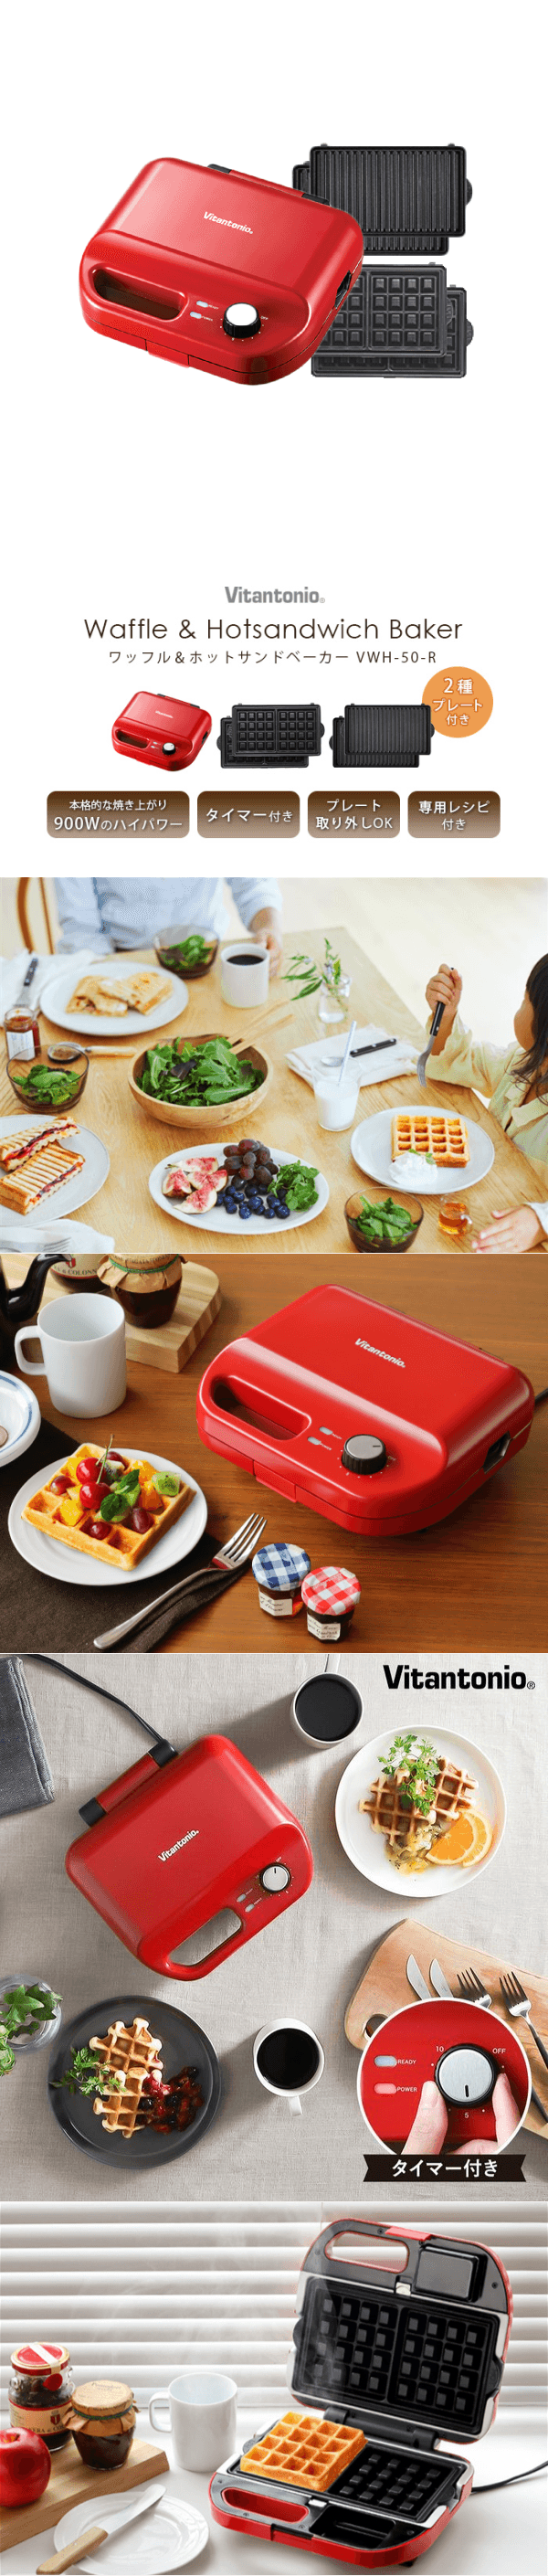 日本人氣早餐機Vitantonio 小型V鬆餅機華夫餅早餐機附贈2個烤盤 紅色 VWH-50-R[北美版電壓]【加拿大直郵】